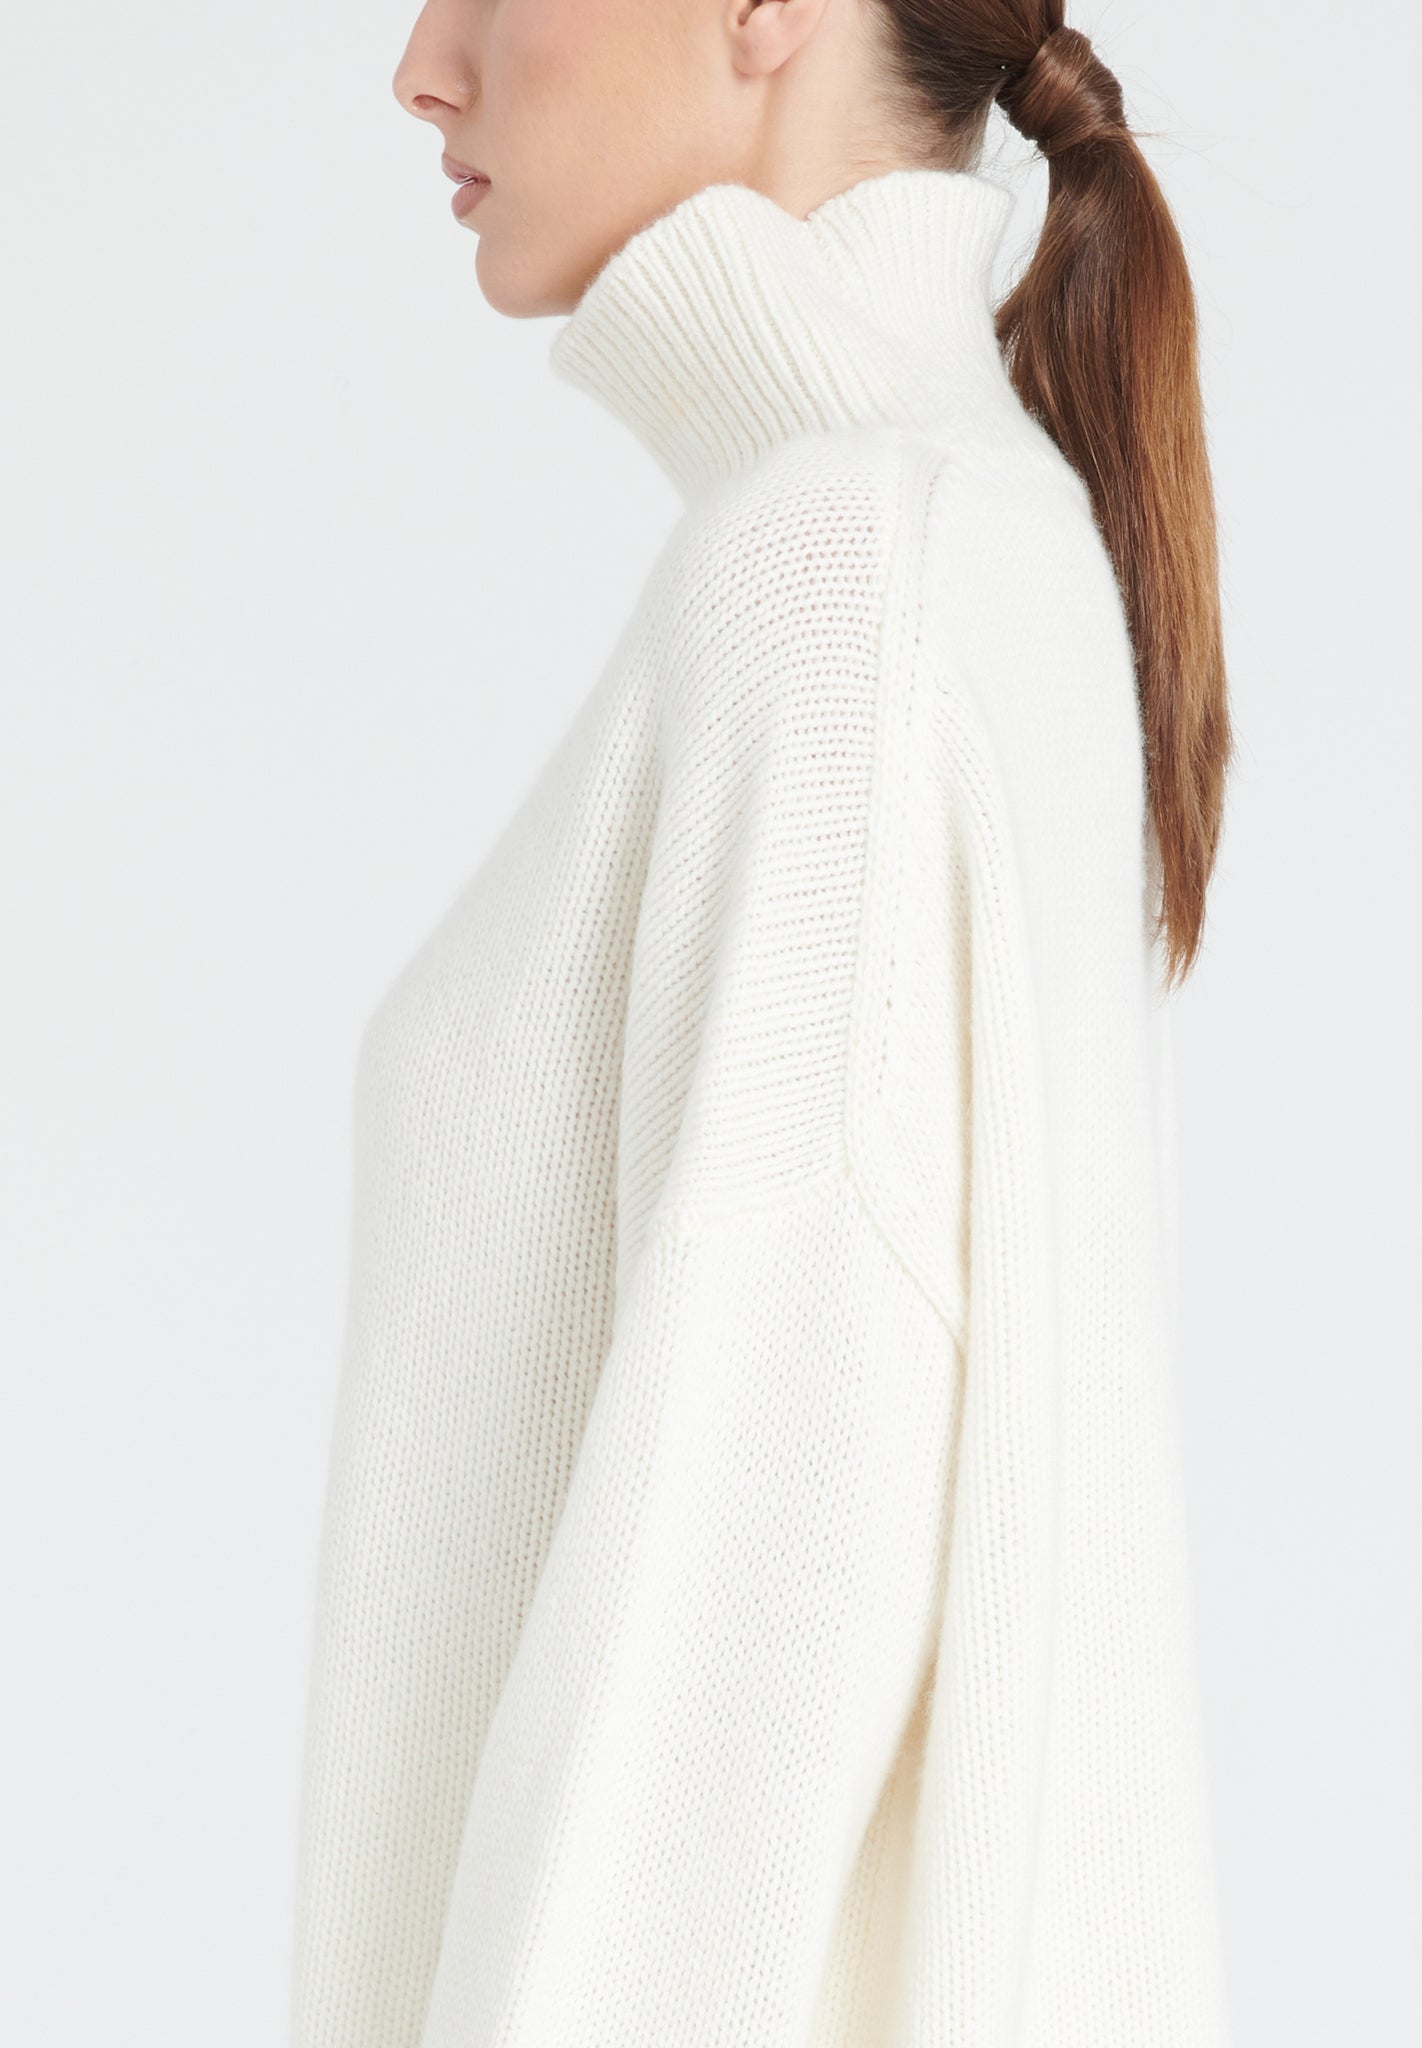 ZAYA 3 High neck sweater in 10 thread count cashmere, ecru white